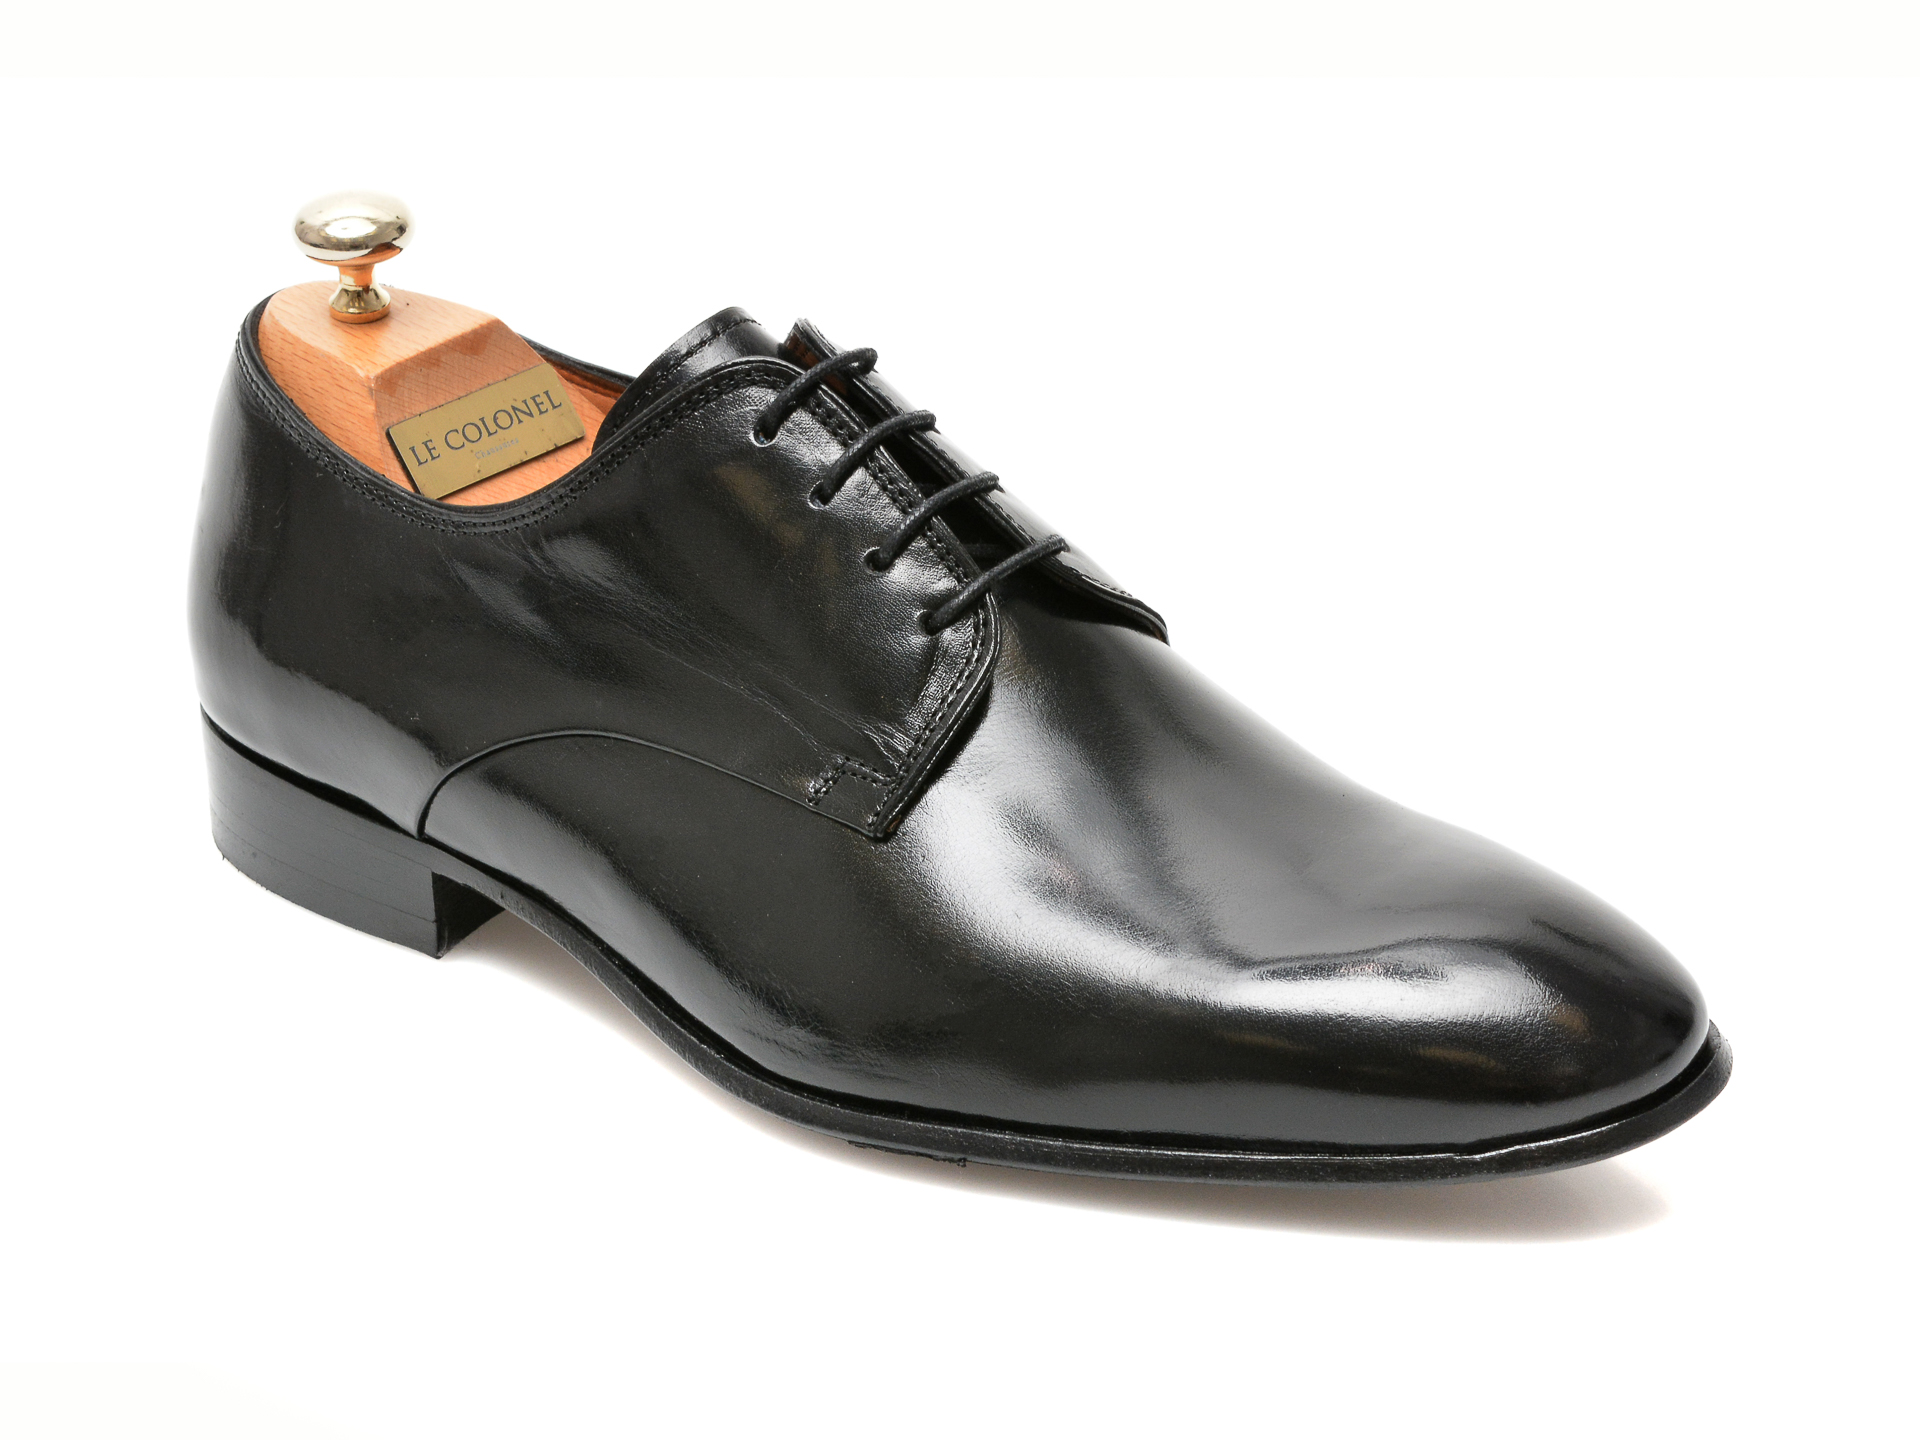 Pantofi LE COLONEL negri, 49817, din piele naturala Le Colonel